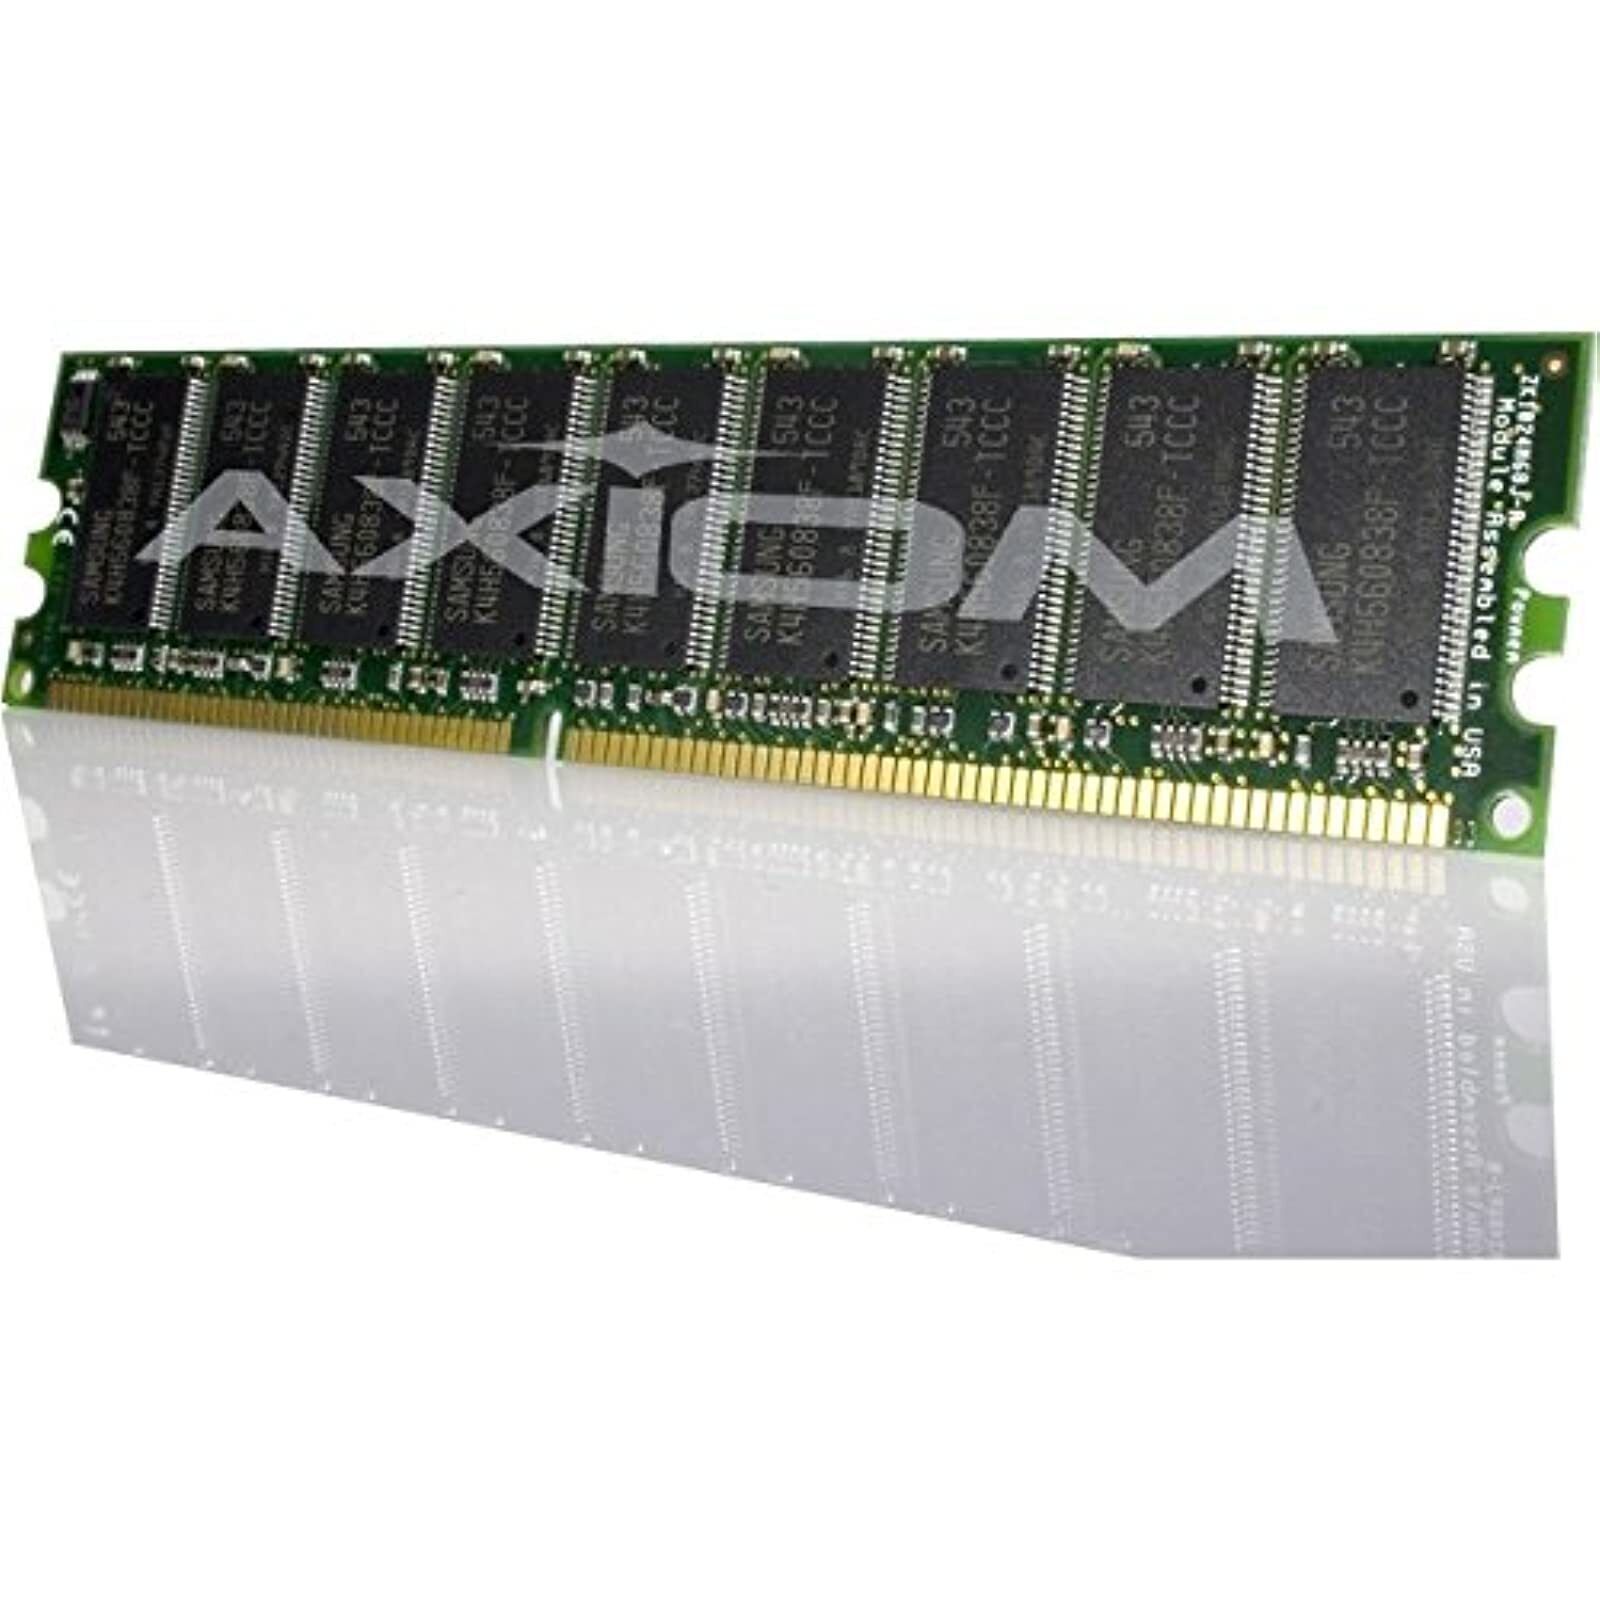 Axiom 1GB DDR SDRAM Memory Module DDR1 AXR400N3Q/1G Very Good